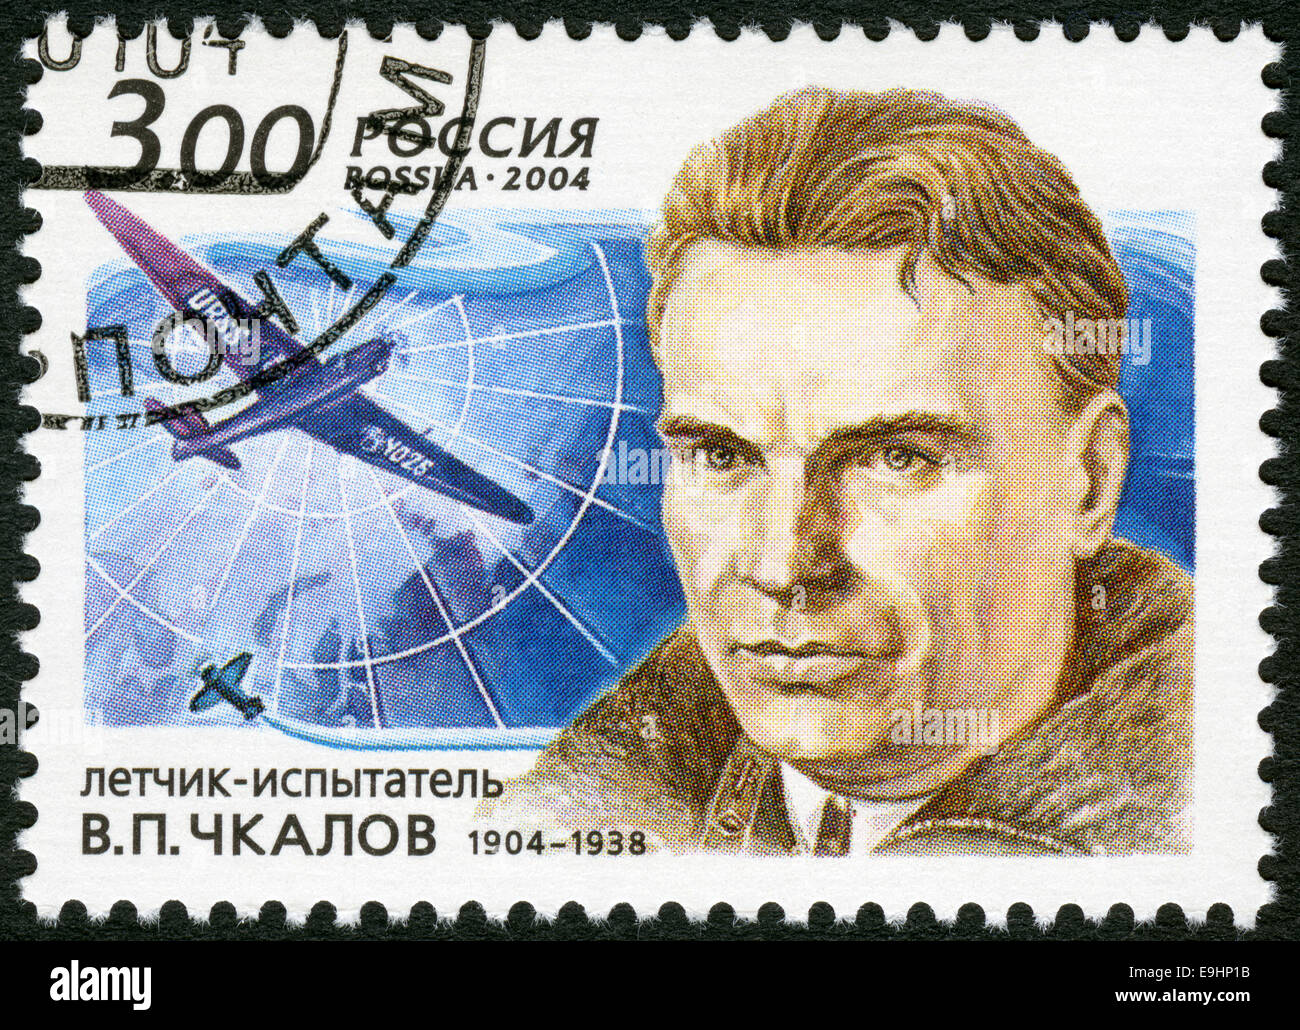 Russie - 2004 : présente le 100e anniversaire de la naissance de V.P.Chkalov (1904-1938), un pilote d'essai Banque D'Images